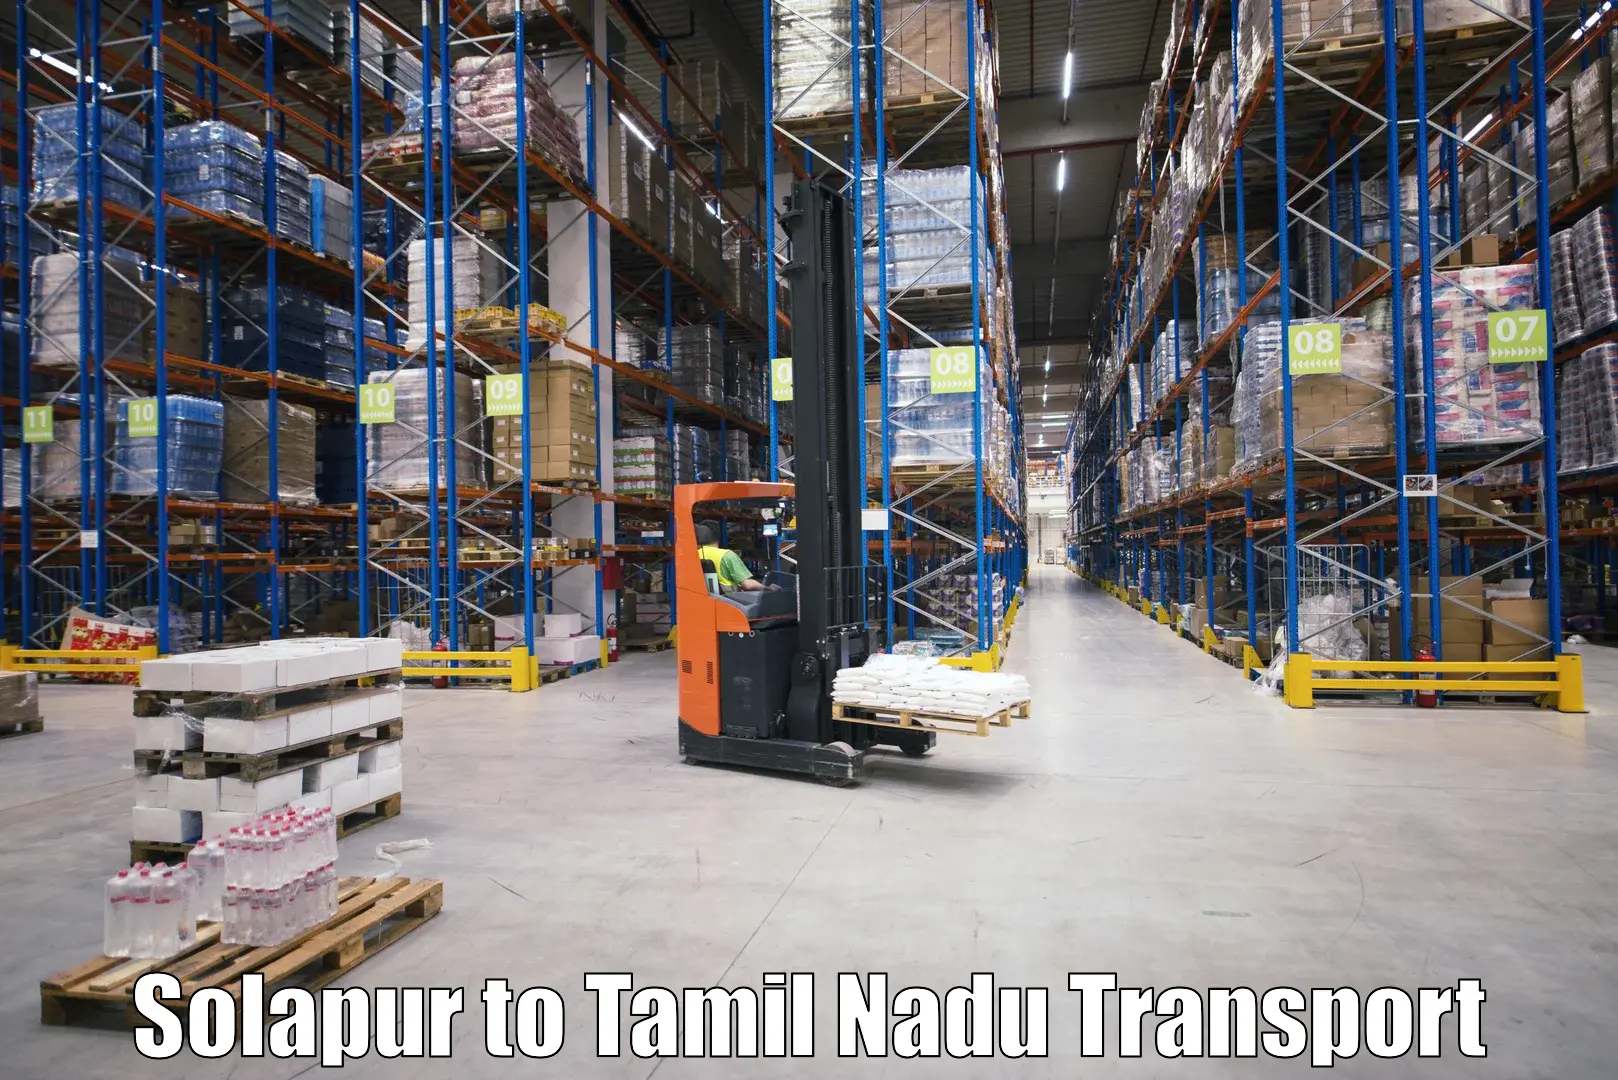 Interstate transport services Solapur to Thiruvadanai